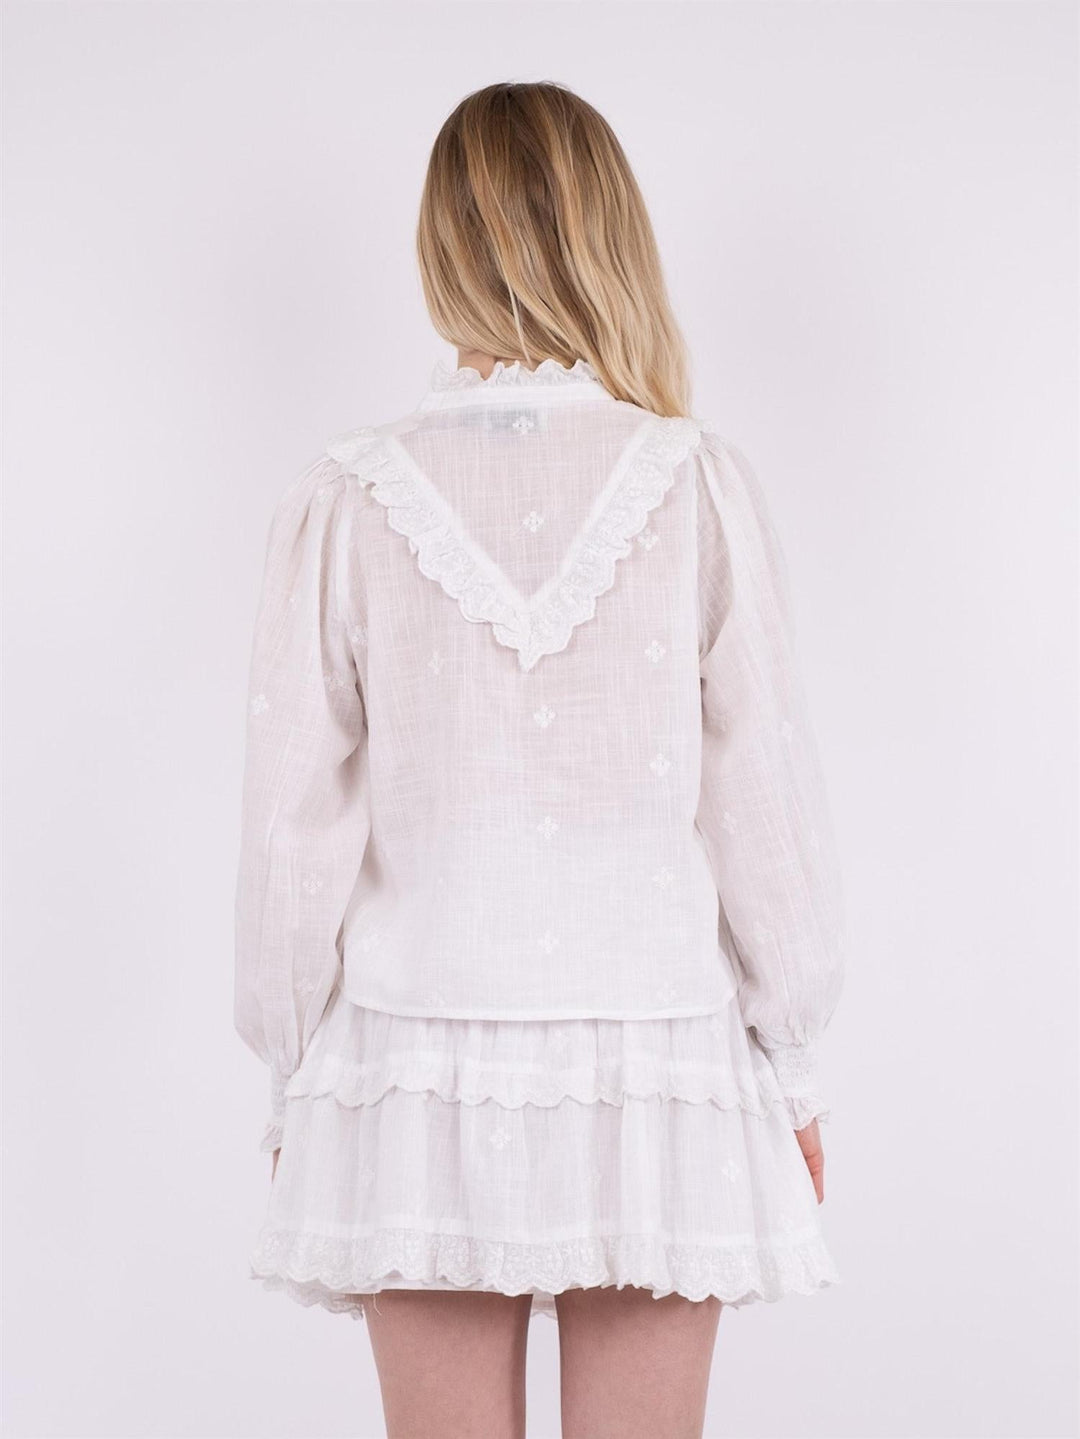 Degas Blouse White | Skjorter og bluser | Smuk - Dameklær på nett